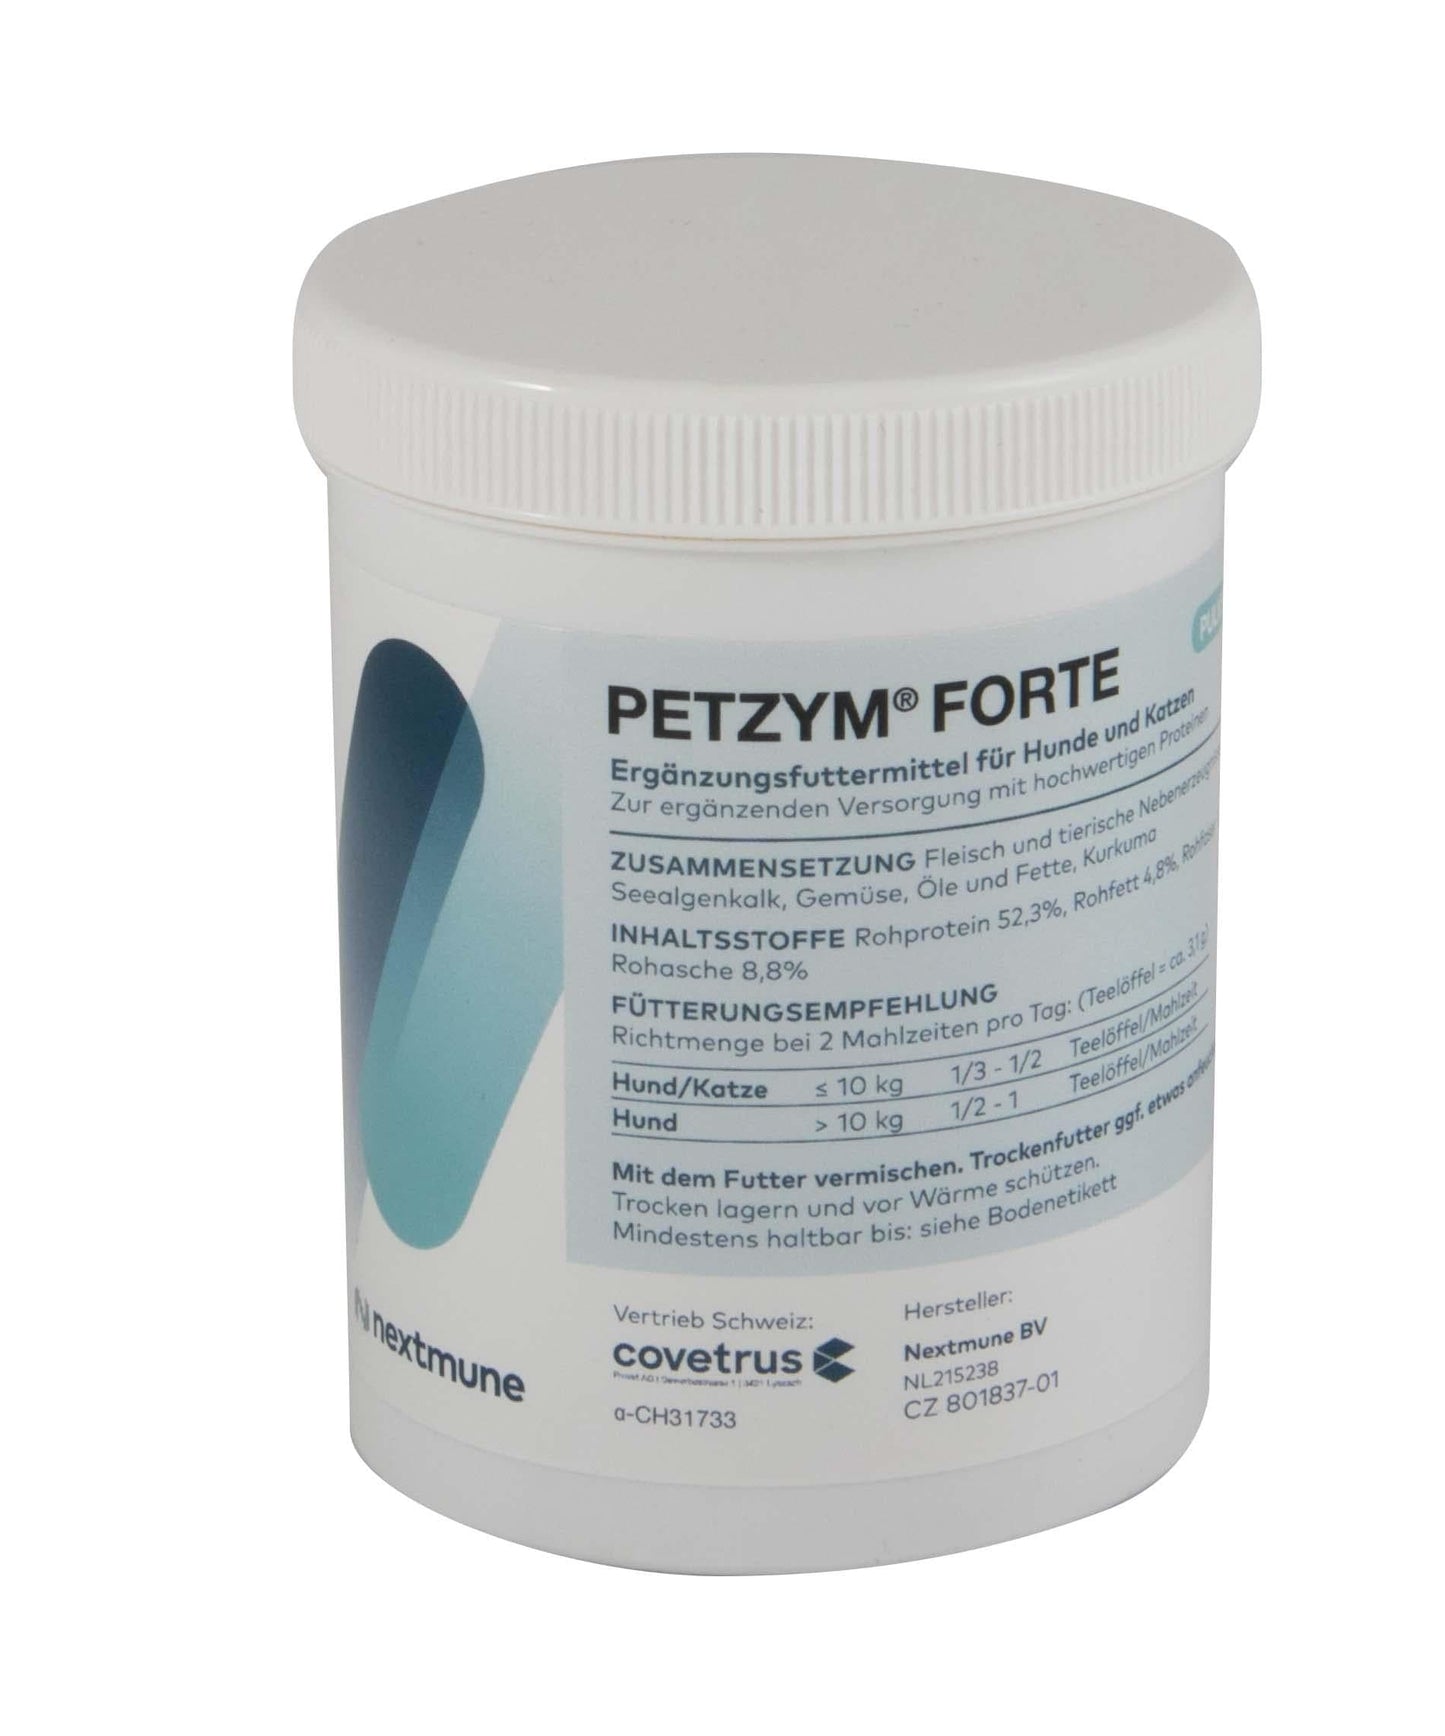 Petzym Forte - nextmune - Alter:Adult, Alter:Senior, Darreichungsform:Pulver, Ergänzungsfuttermittel:Bauchspeicheldrüse, Tierart:Hund, Tierart:Katze - Marigin AG Onlineshop für Tierbedarf